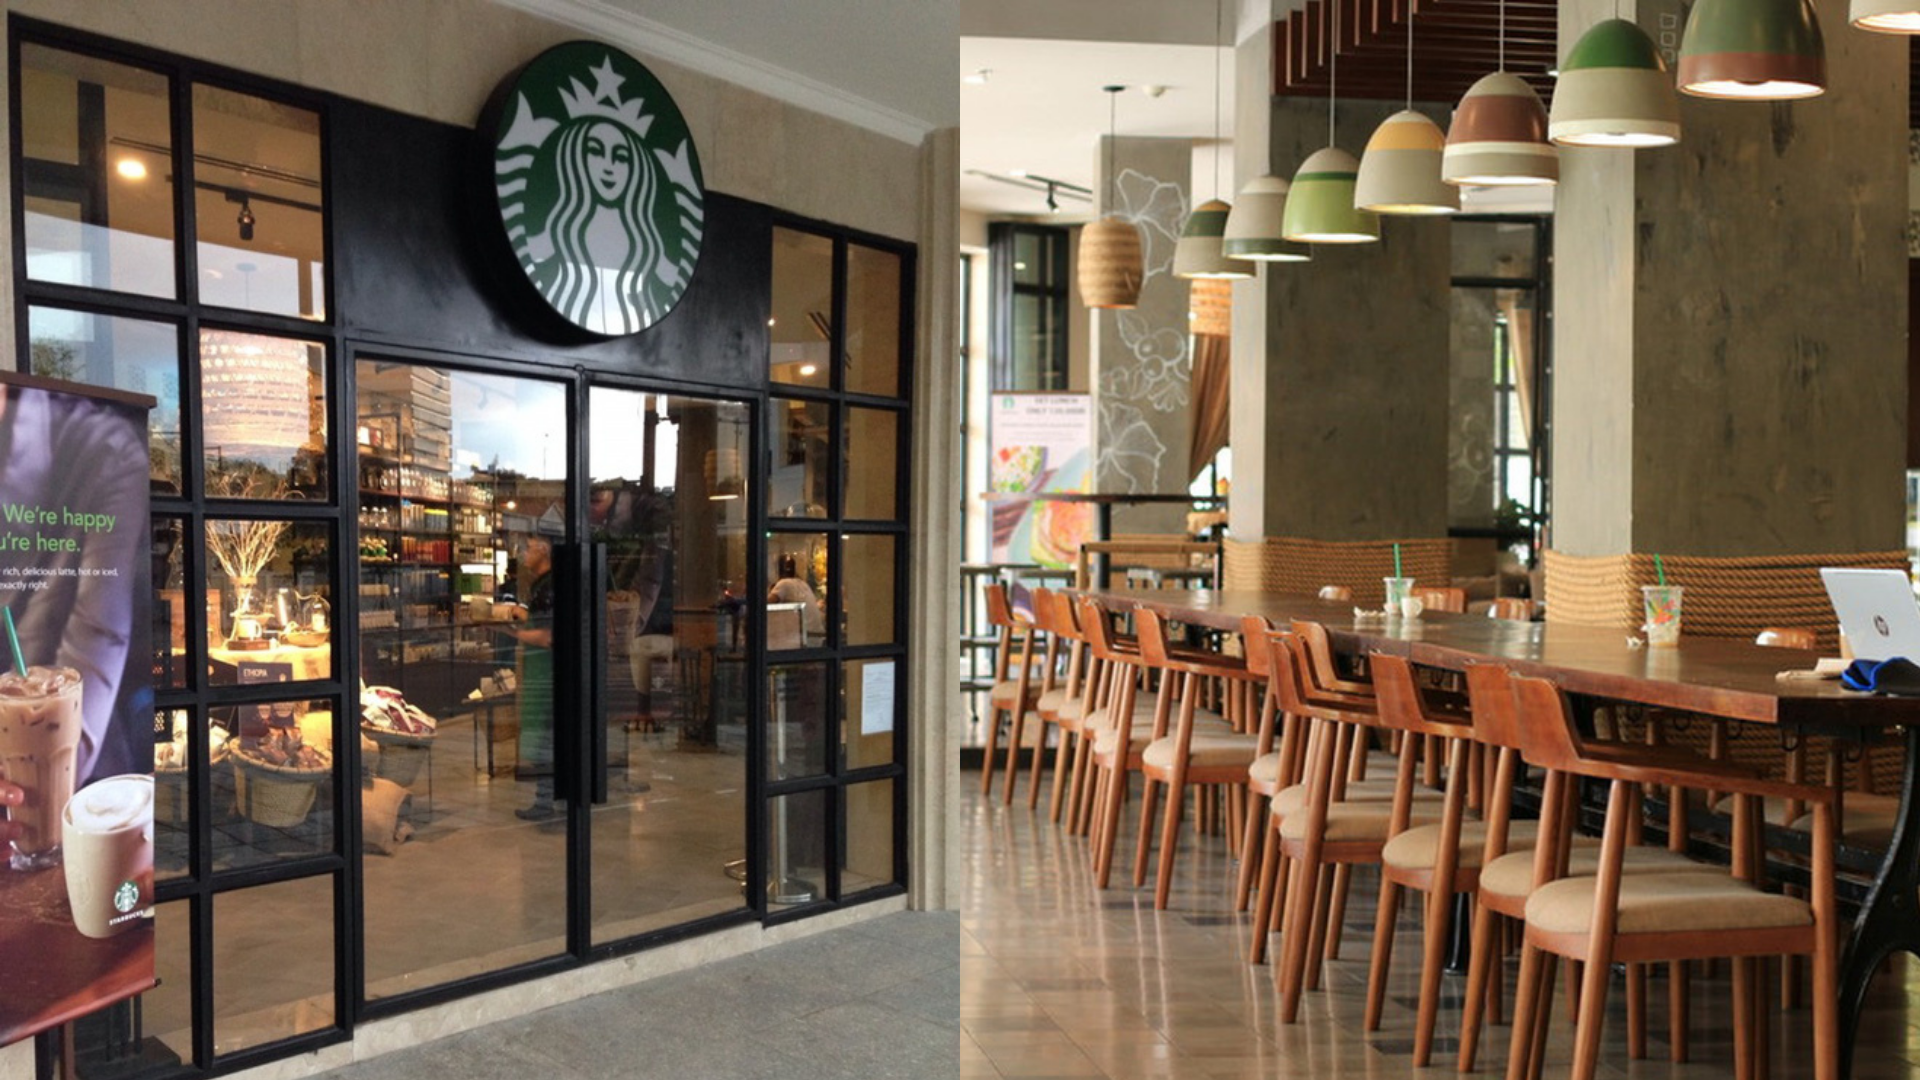 Chi nhánh đình đám nhất của Starbucks ở Sài Gòn chính thức đóng cửa